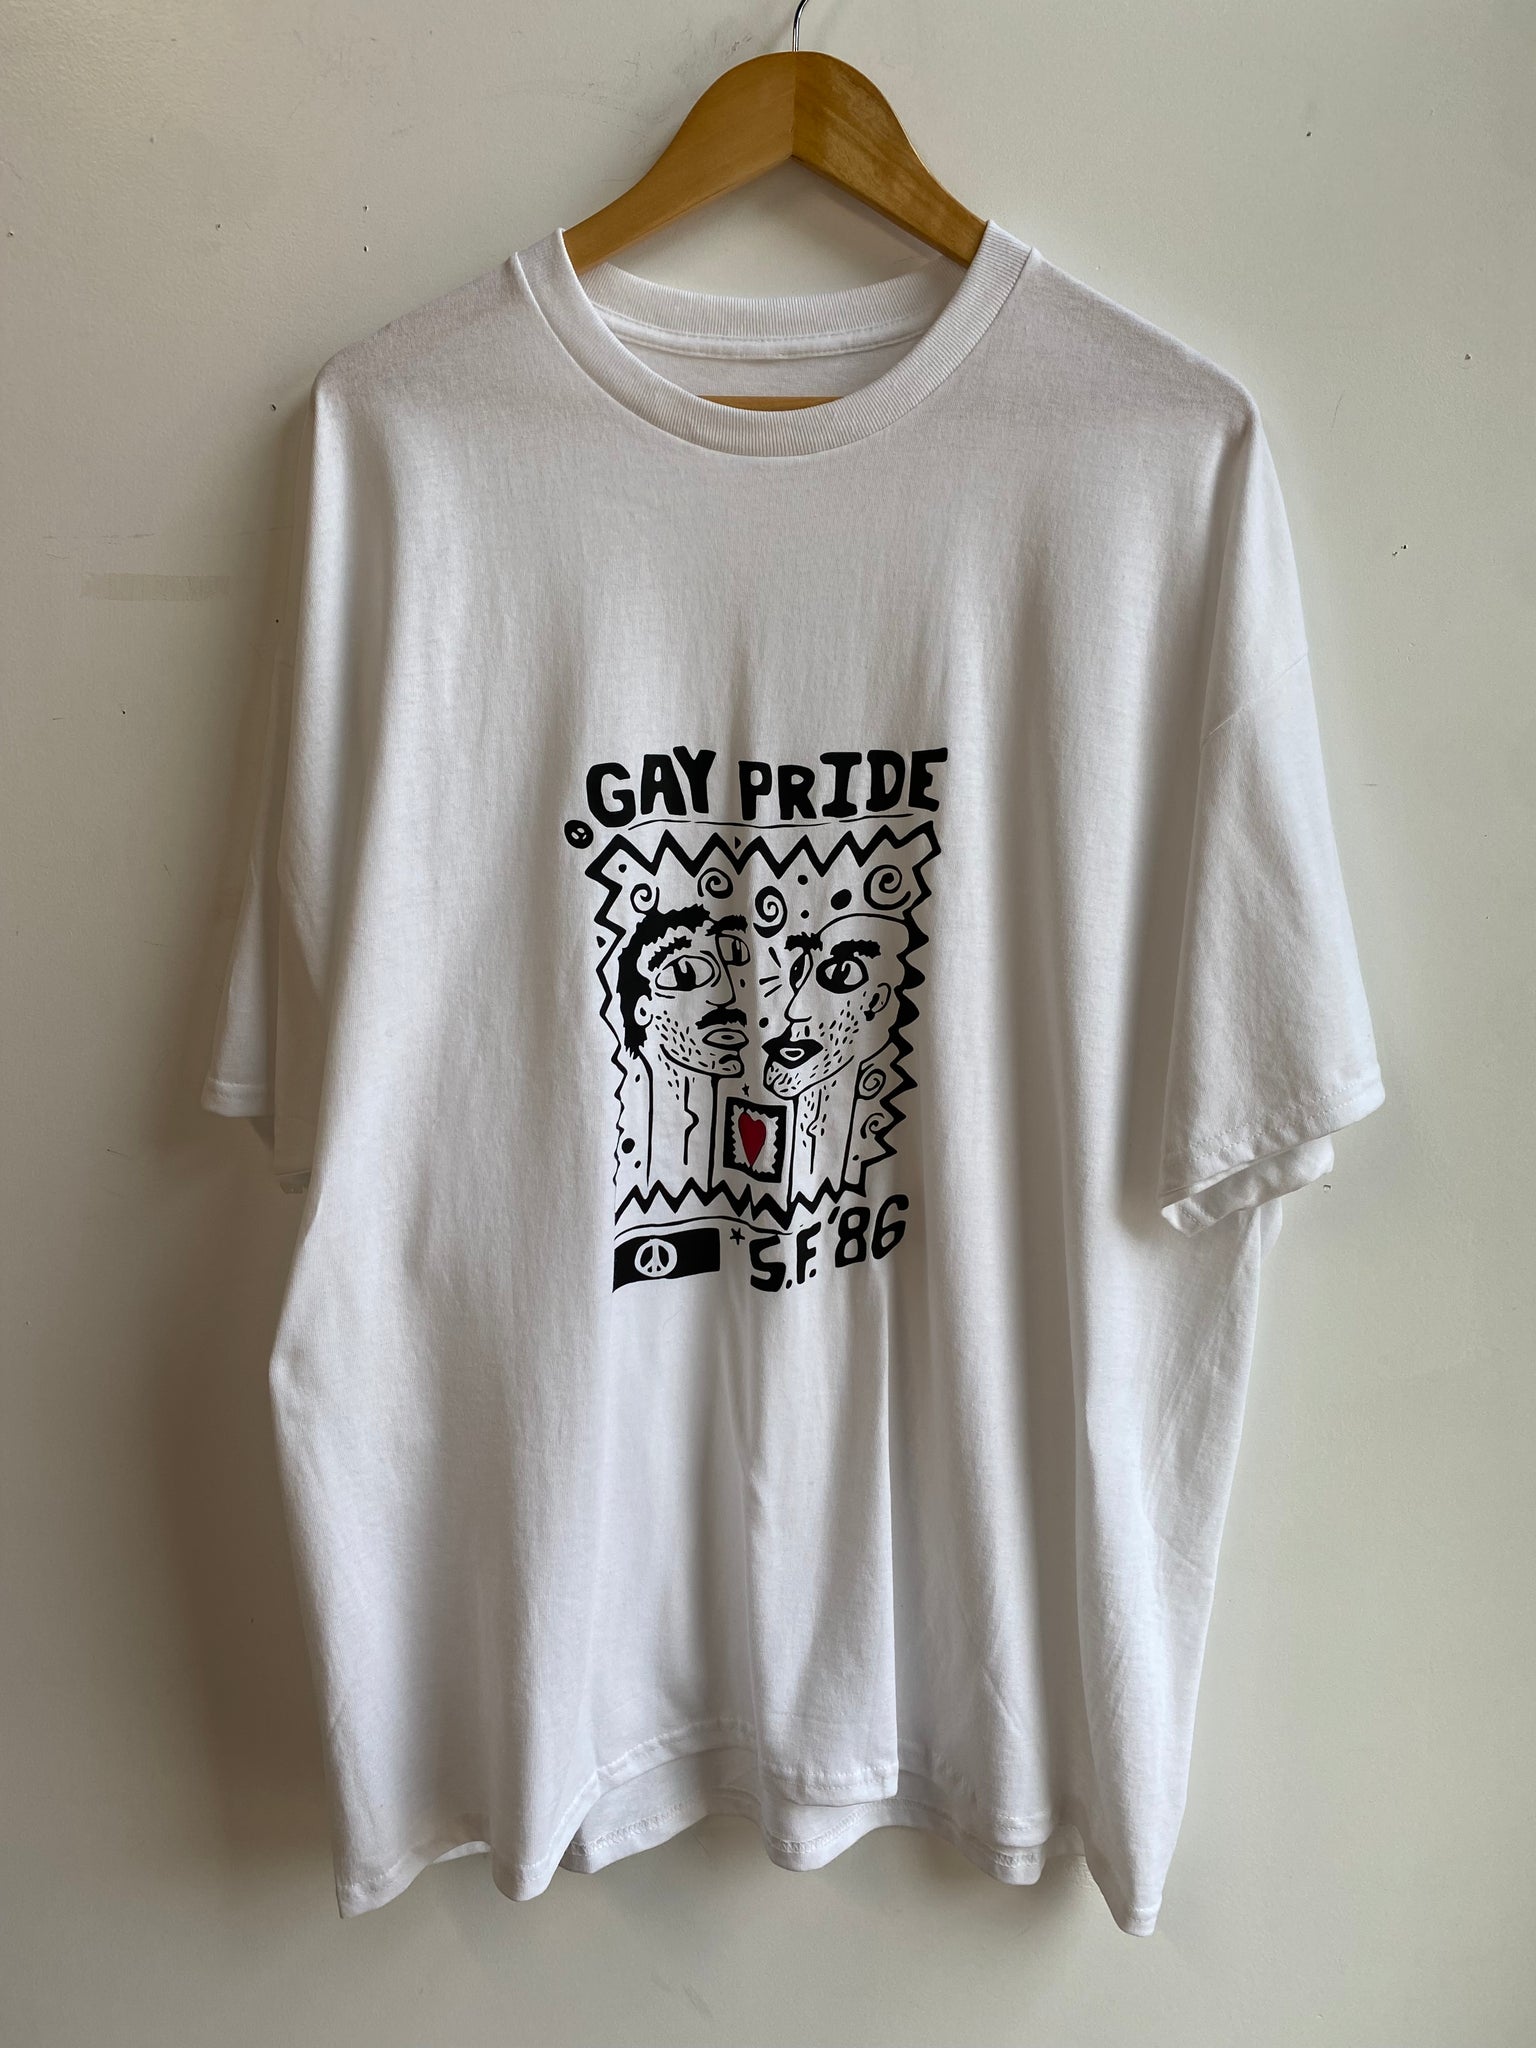 Ultra Rare San Francisco 1986 Gay Pride Tee Shirt